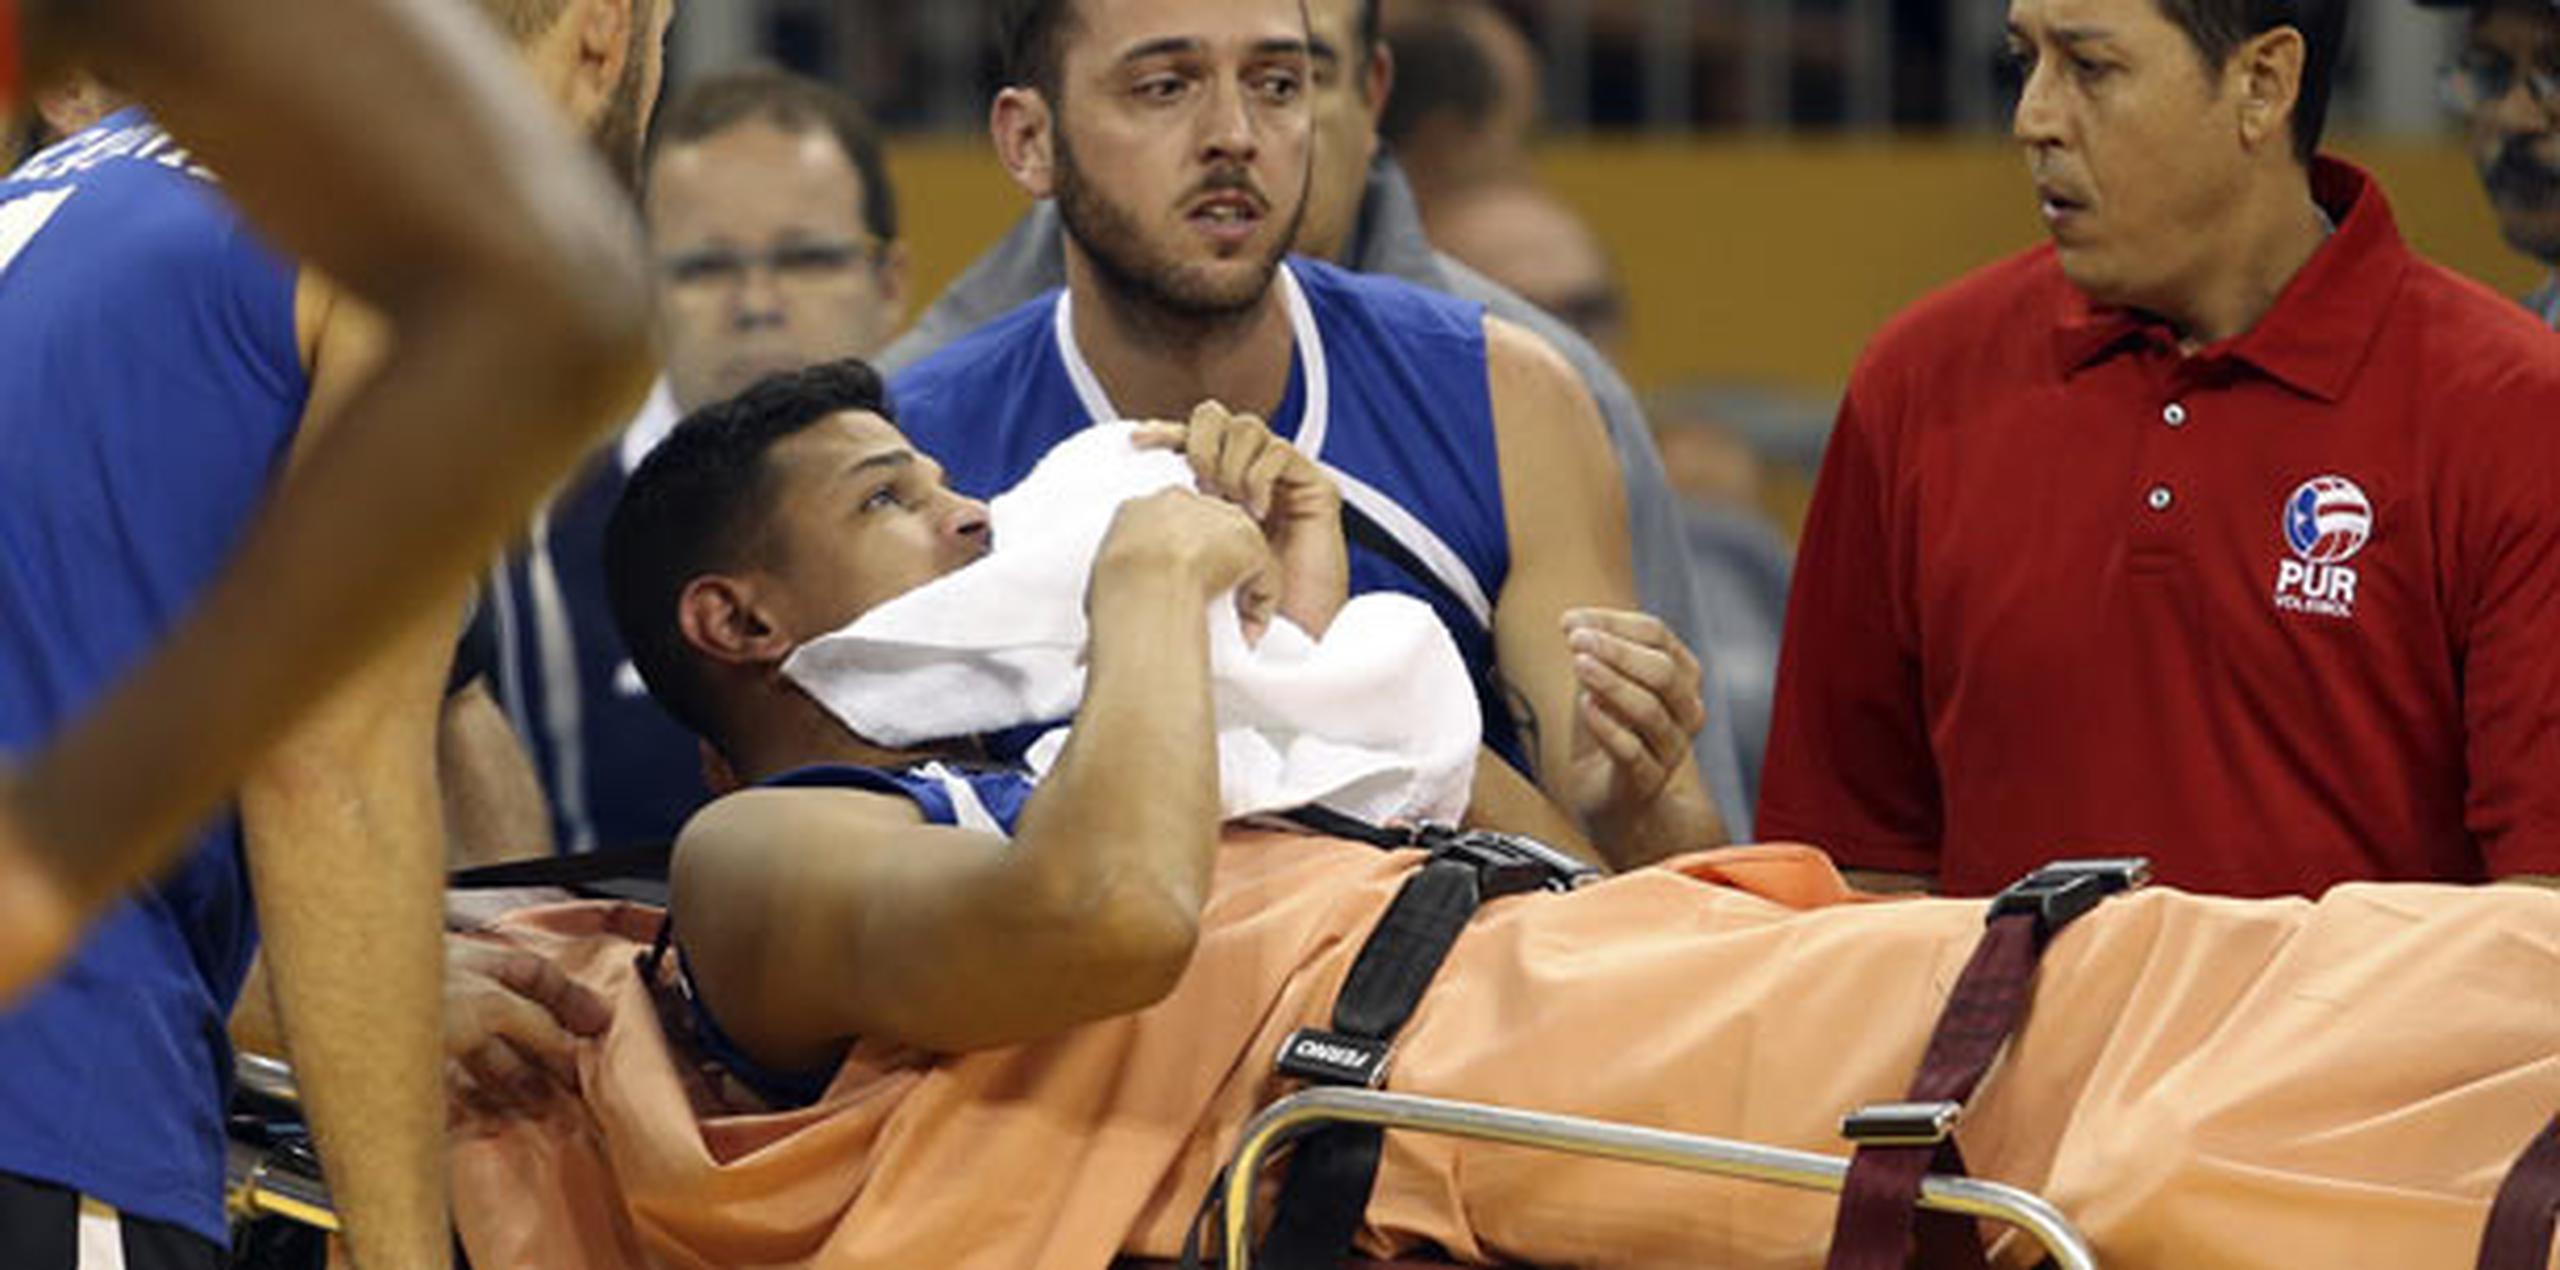 Steven Morales sufrió la lesión en el tercer parcial al aterrizar sobre el pie de un jugador de Cuba. (juan.martinez@gfrmedia.com)